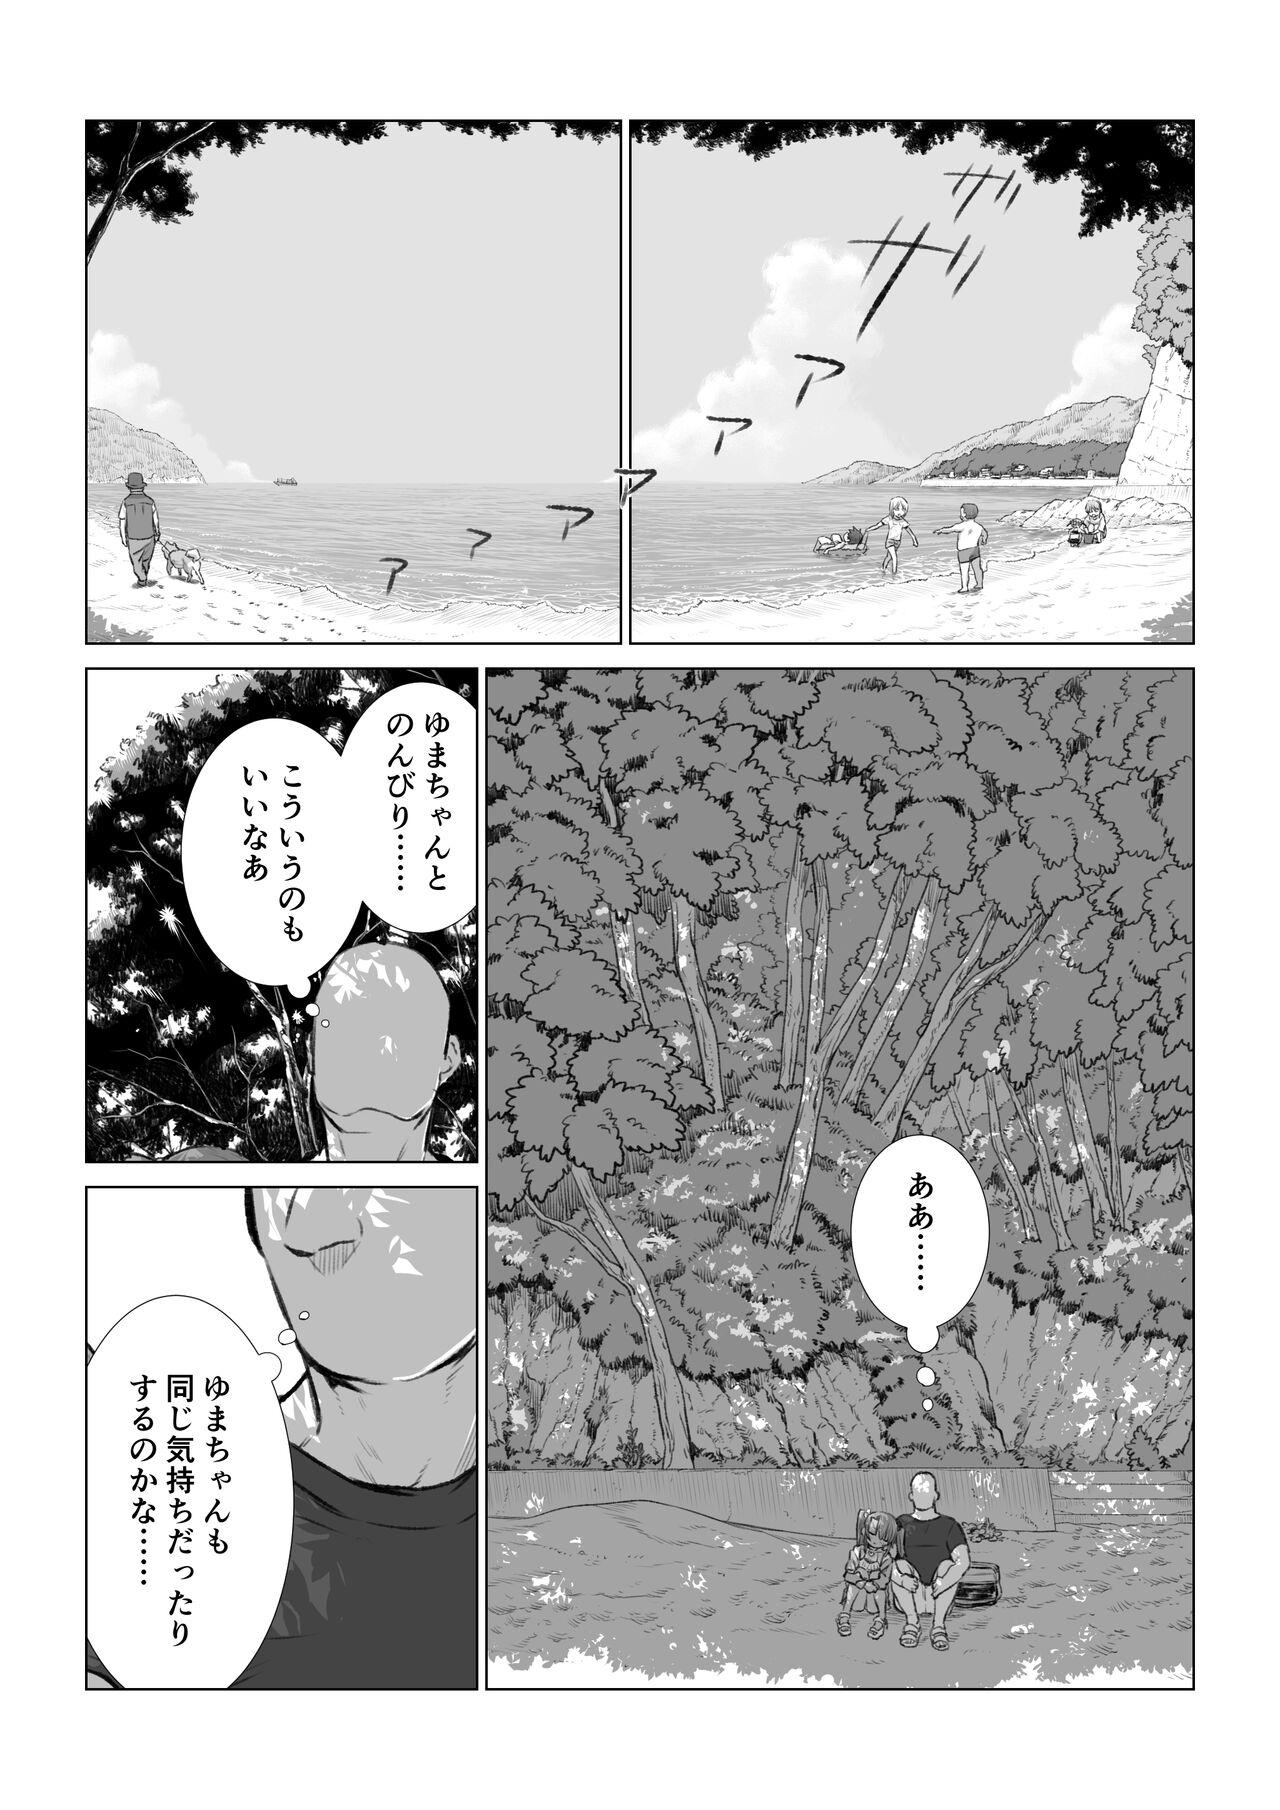 Yuma-chan's Web manga 45